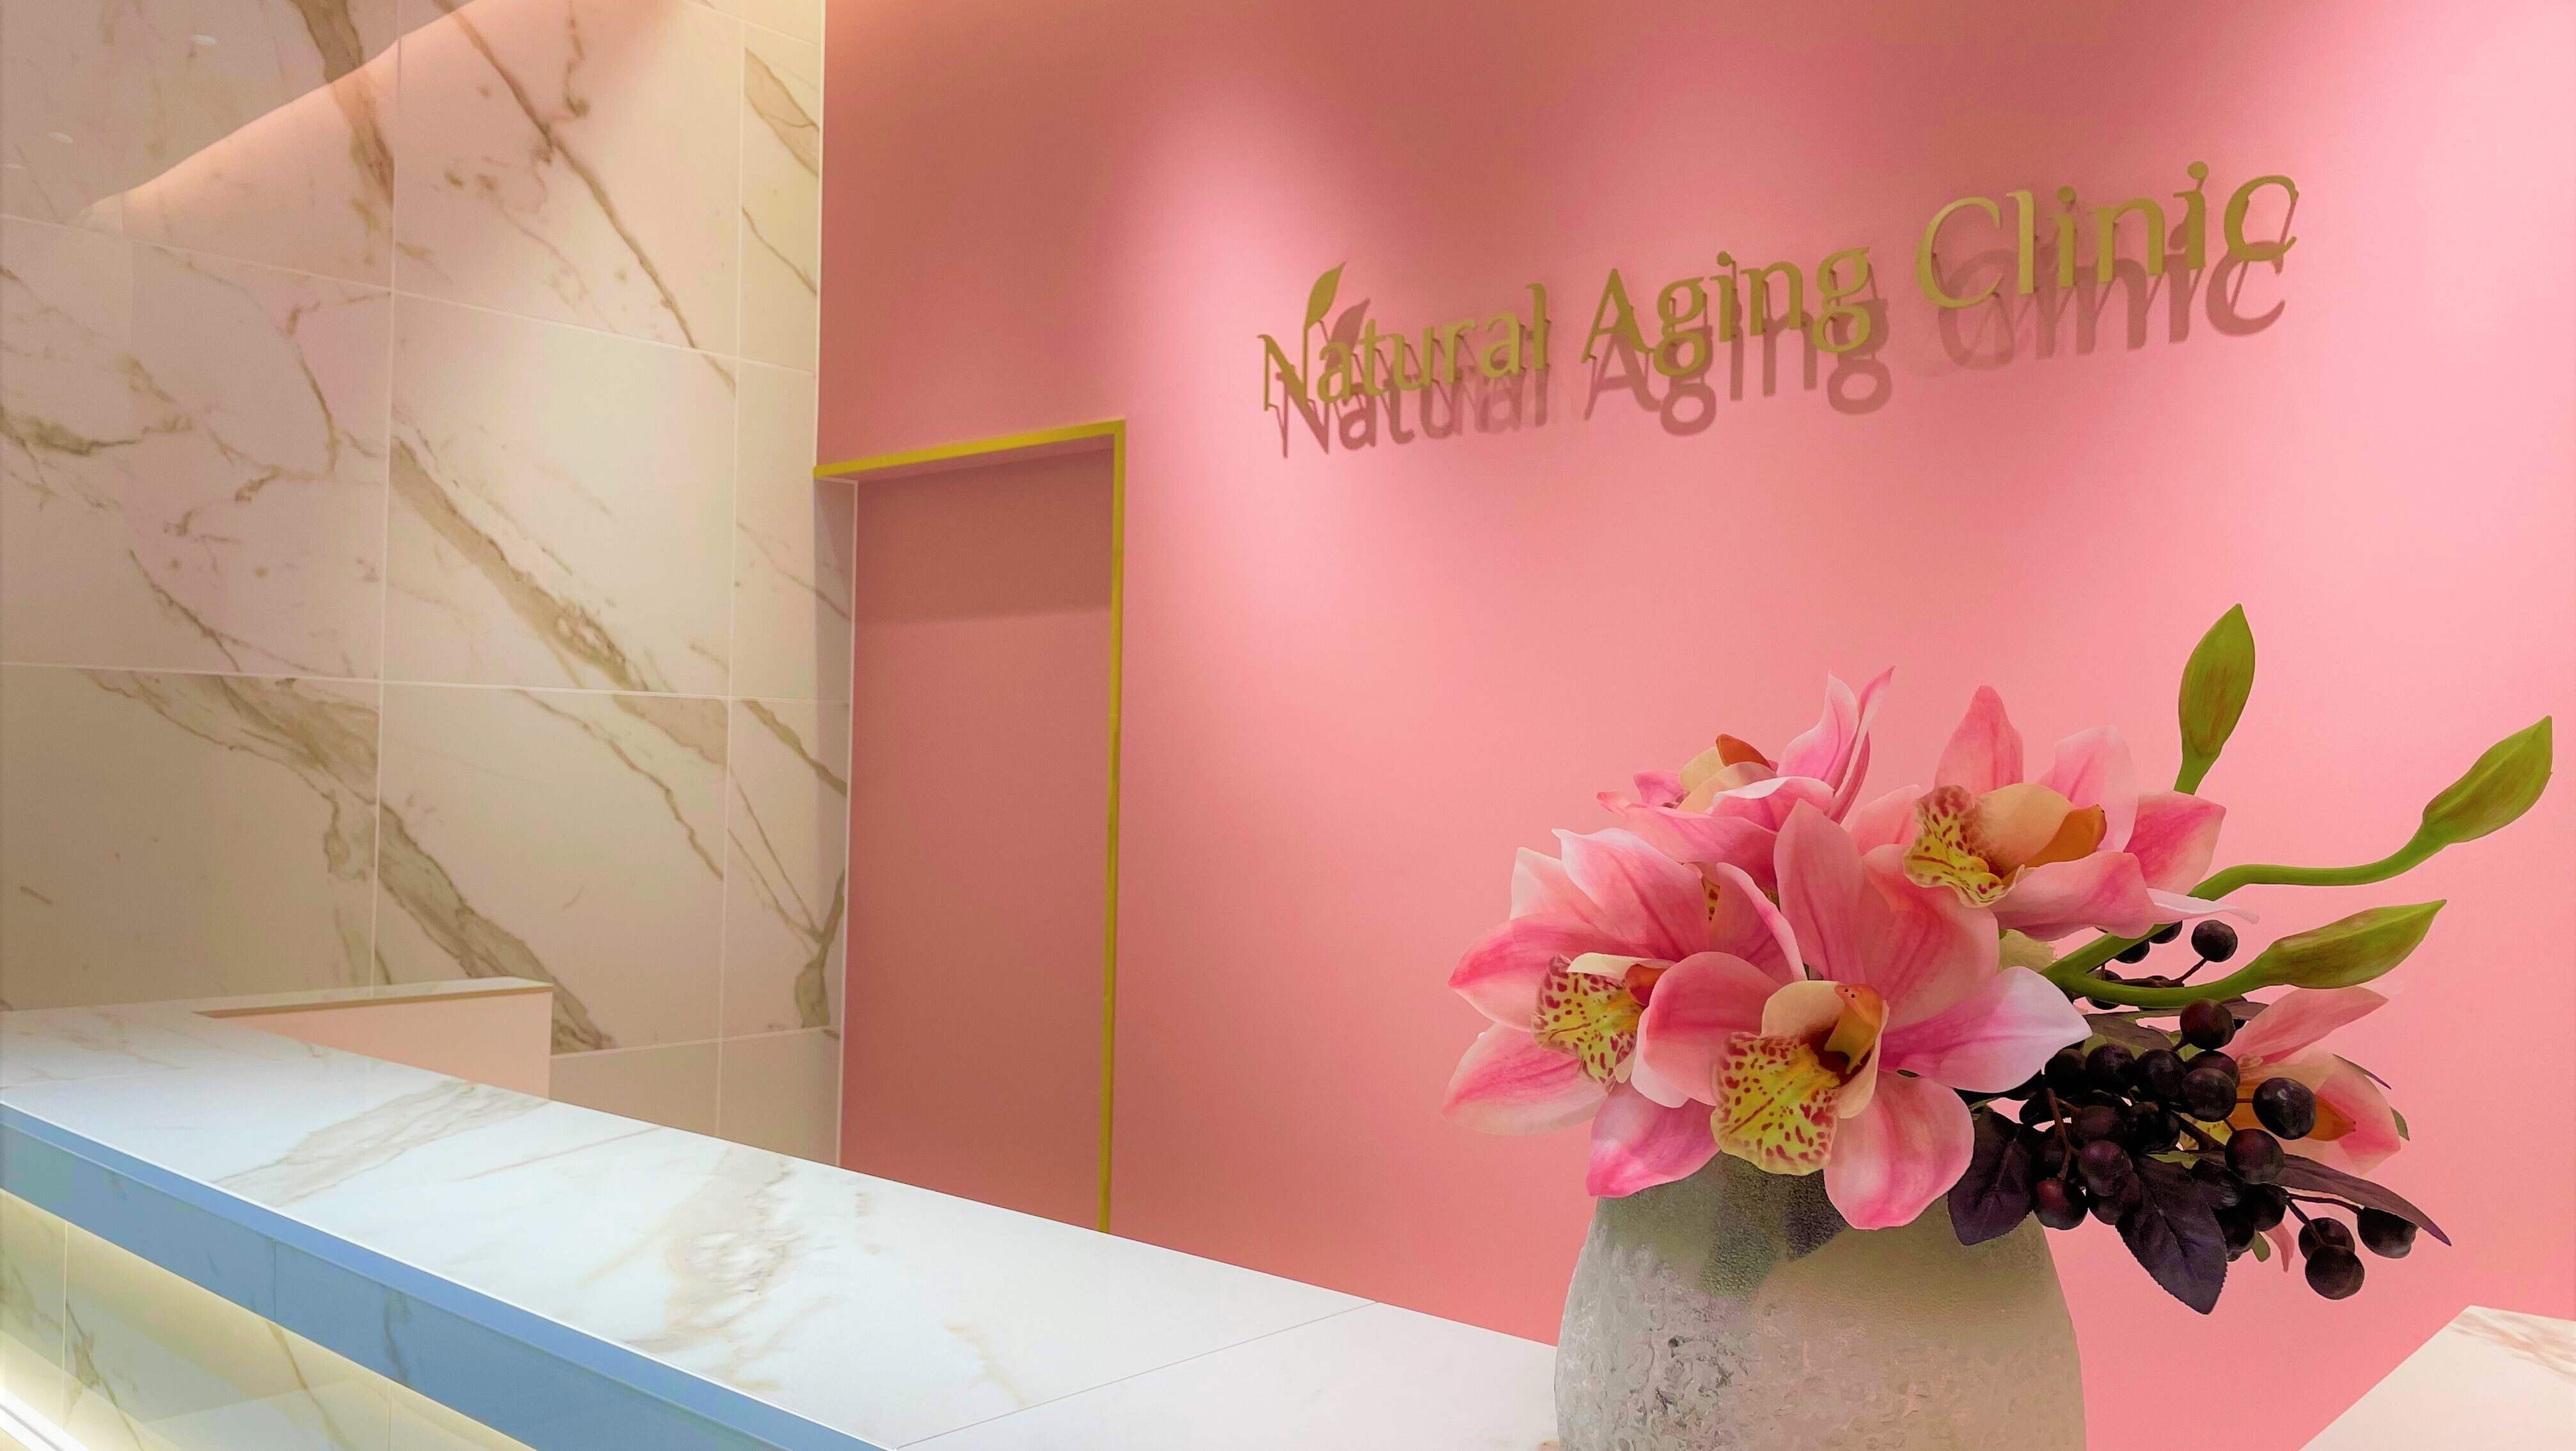 ナチュラルエイジングクリニック(Natural Aging Clinic)の紹介画像